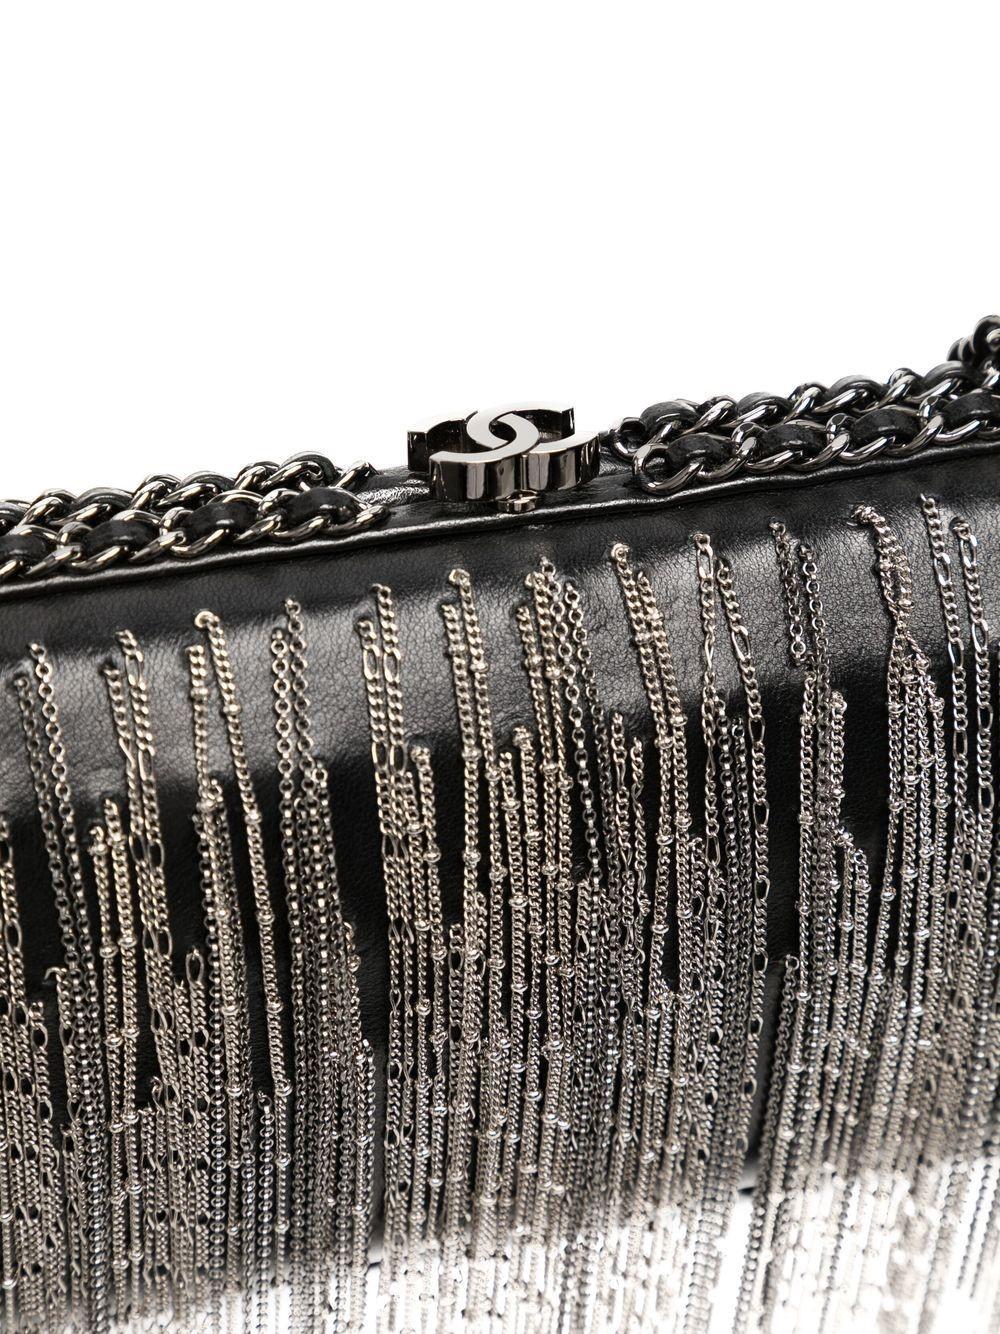 Diese kantige Clutch mit Kettendetails von Chanel stammt aus der Herbstkollektion 2017. Für diese Kollektion verwandelte Karl Lagerfeld das Grand Palais auf dem Laufsteg in eine Raumstation und setzte auf viel Schwarz, Silber und Glanz, was diese